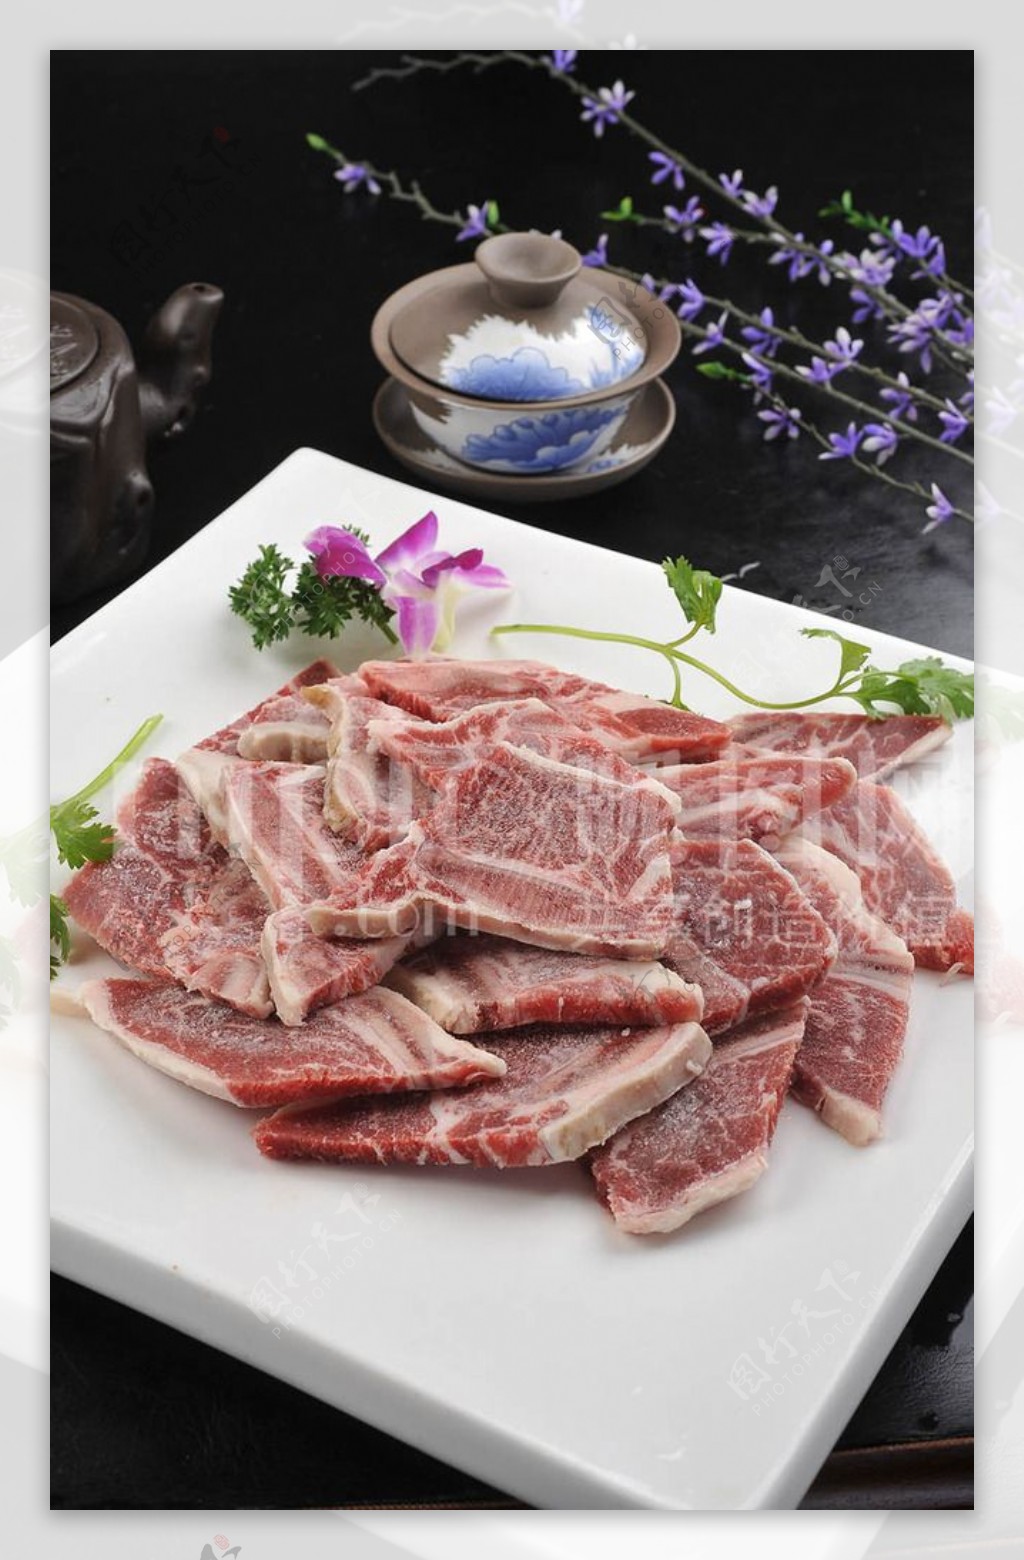 韩式烤牛仔骨 Korean Barbecued Beef Short Ribs | Dakai Maritimes Newspaper